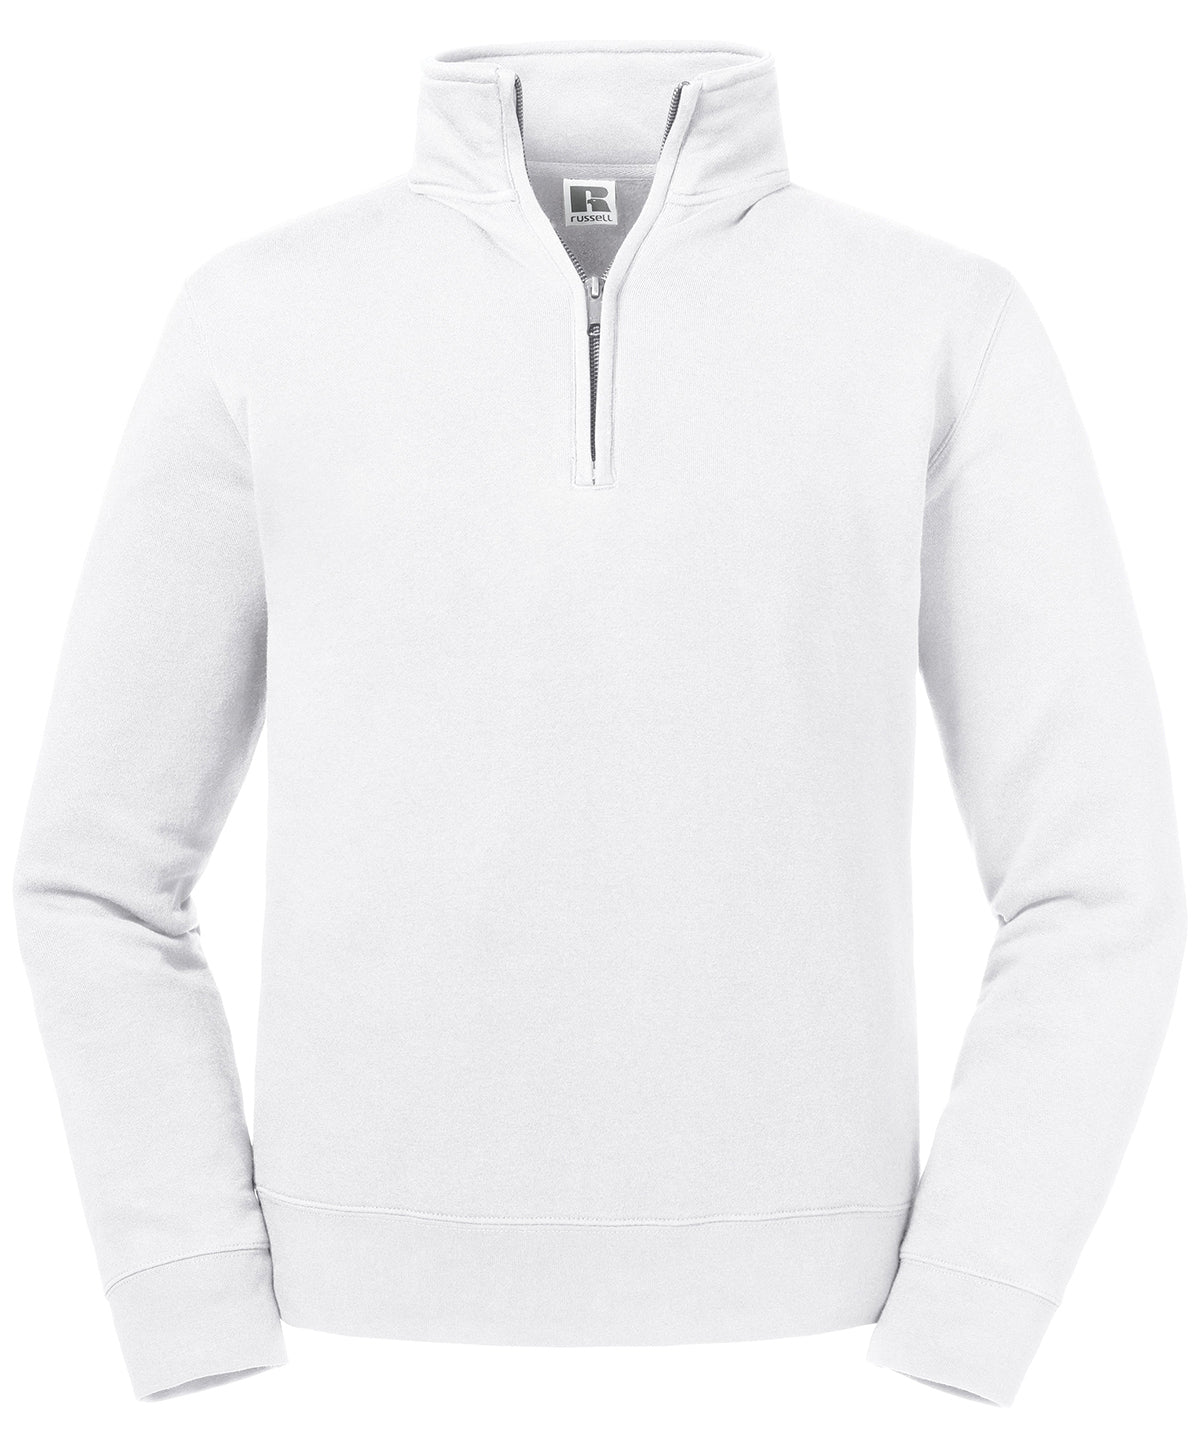 Háskólapeysur - Authentic ¼ Zip Sweatshirt